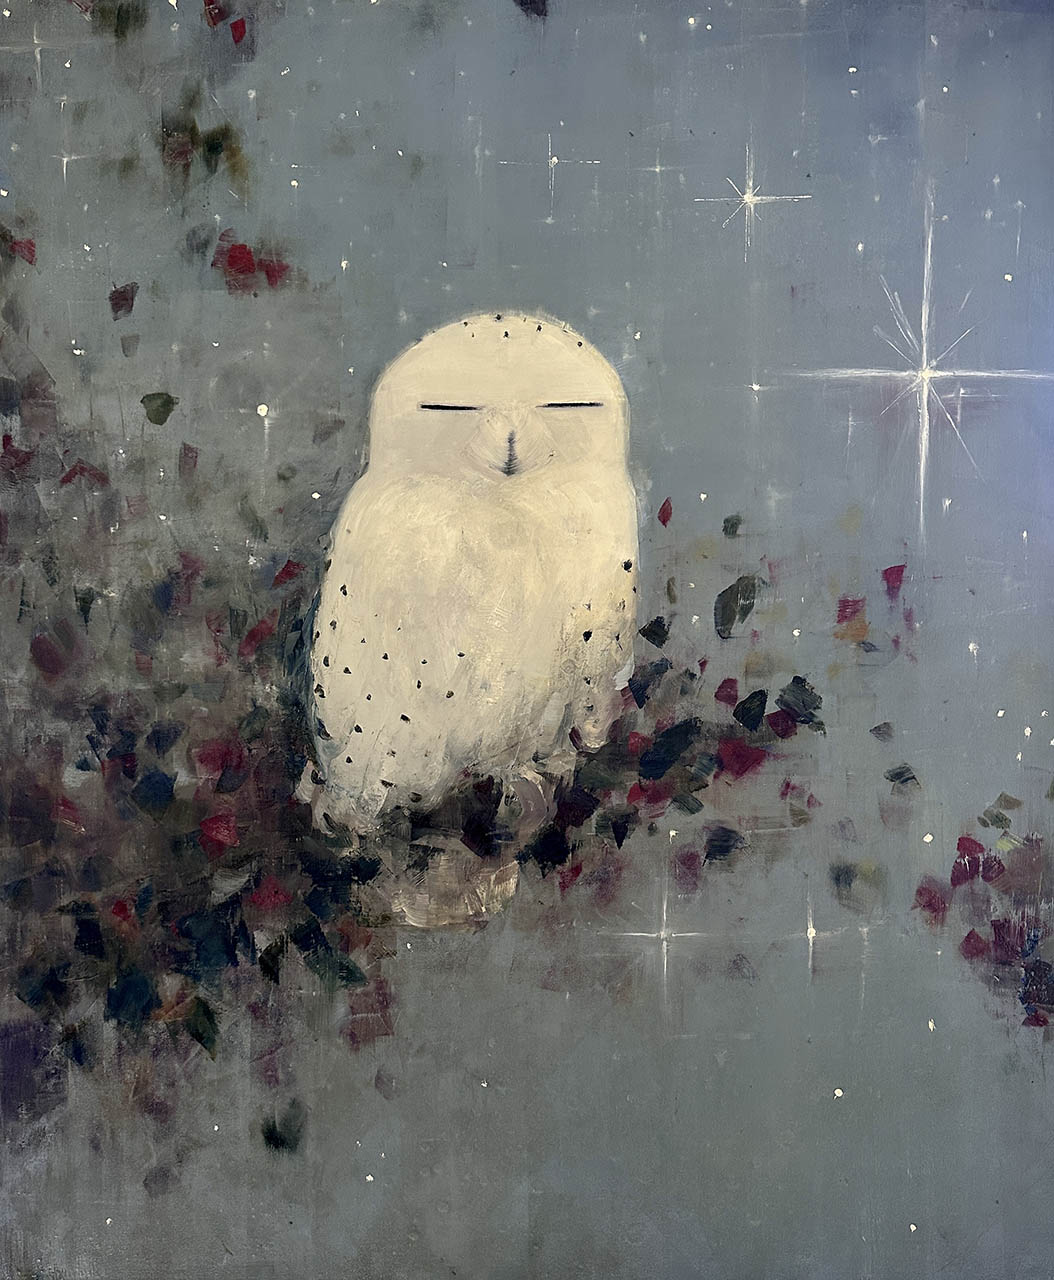 Cosmic Snowbird by Rebecca Kinkead